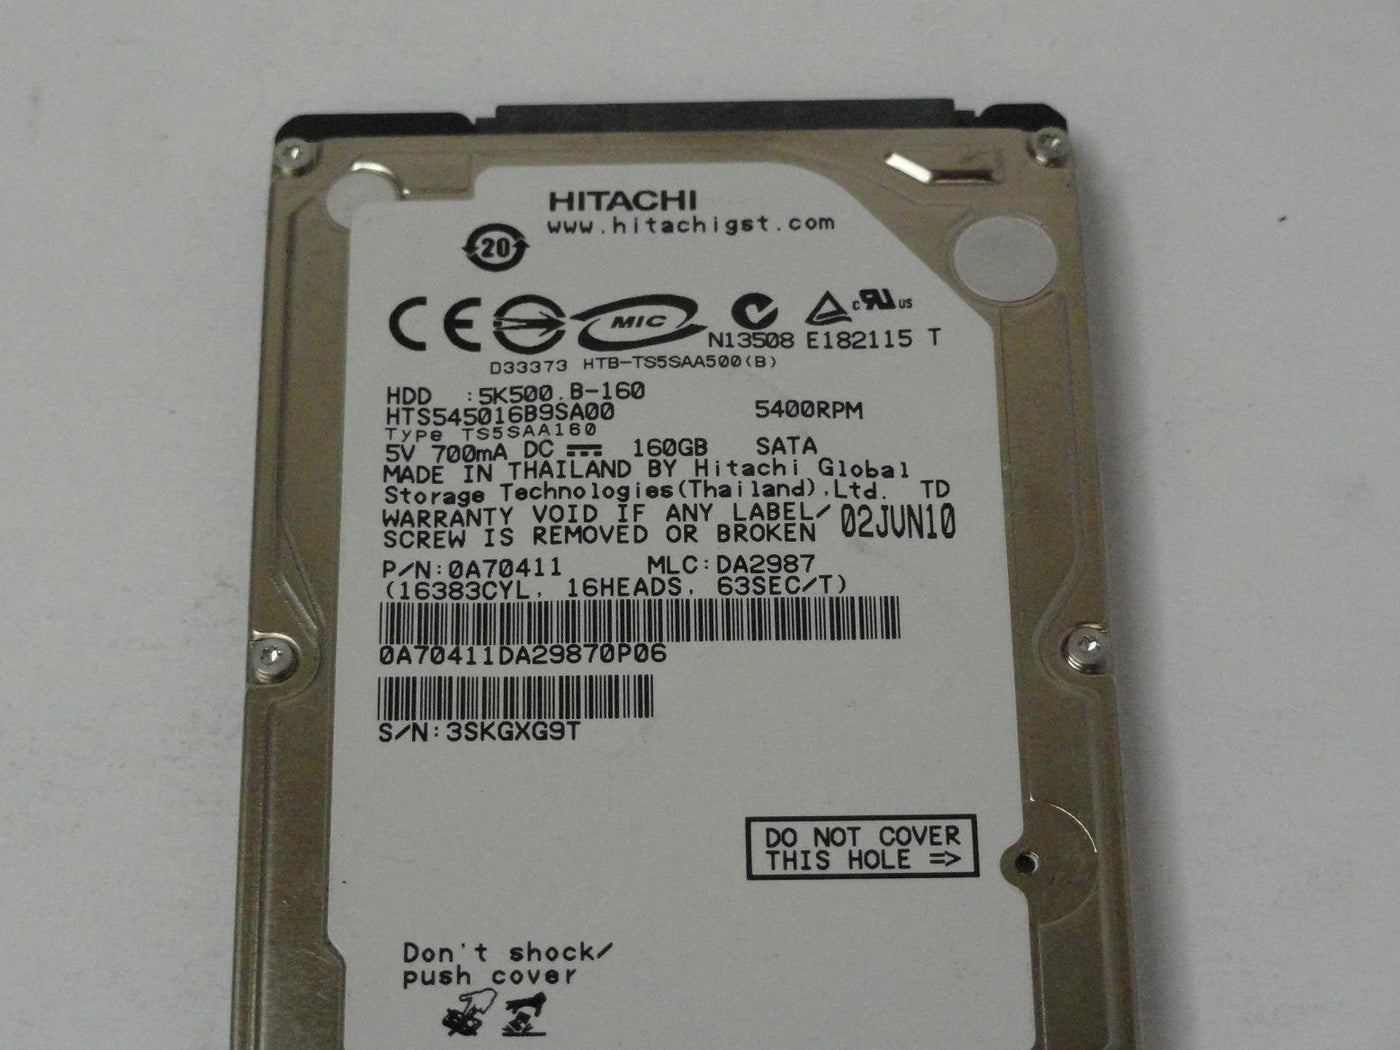 PR15204_0A70411_Hitachi 160GB SATA 5400rpm 2.5in HDD - Image3